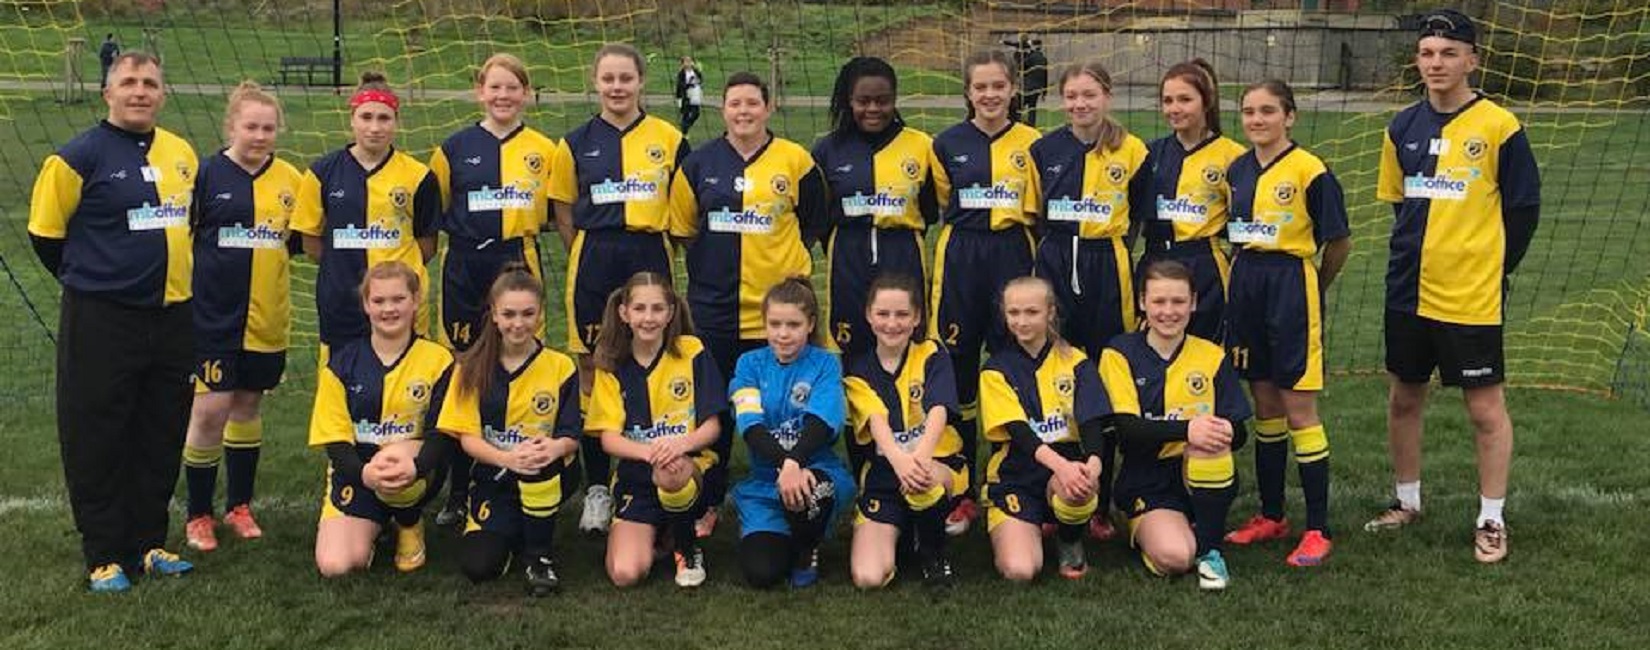 Hednesford United Under 18 Girls